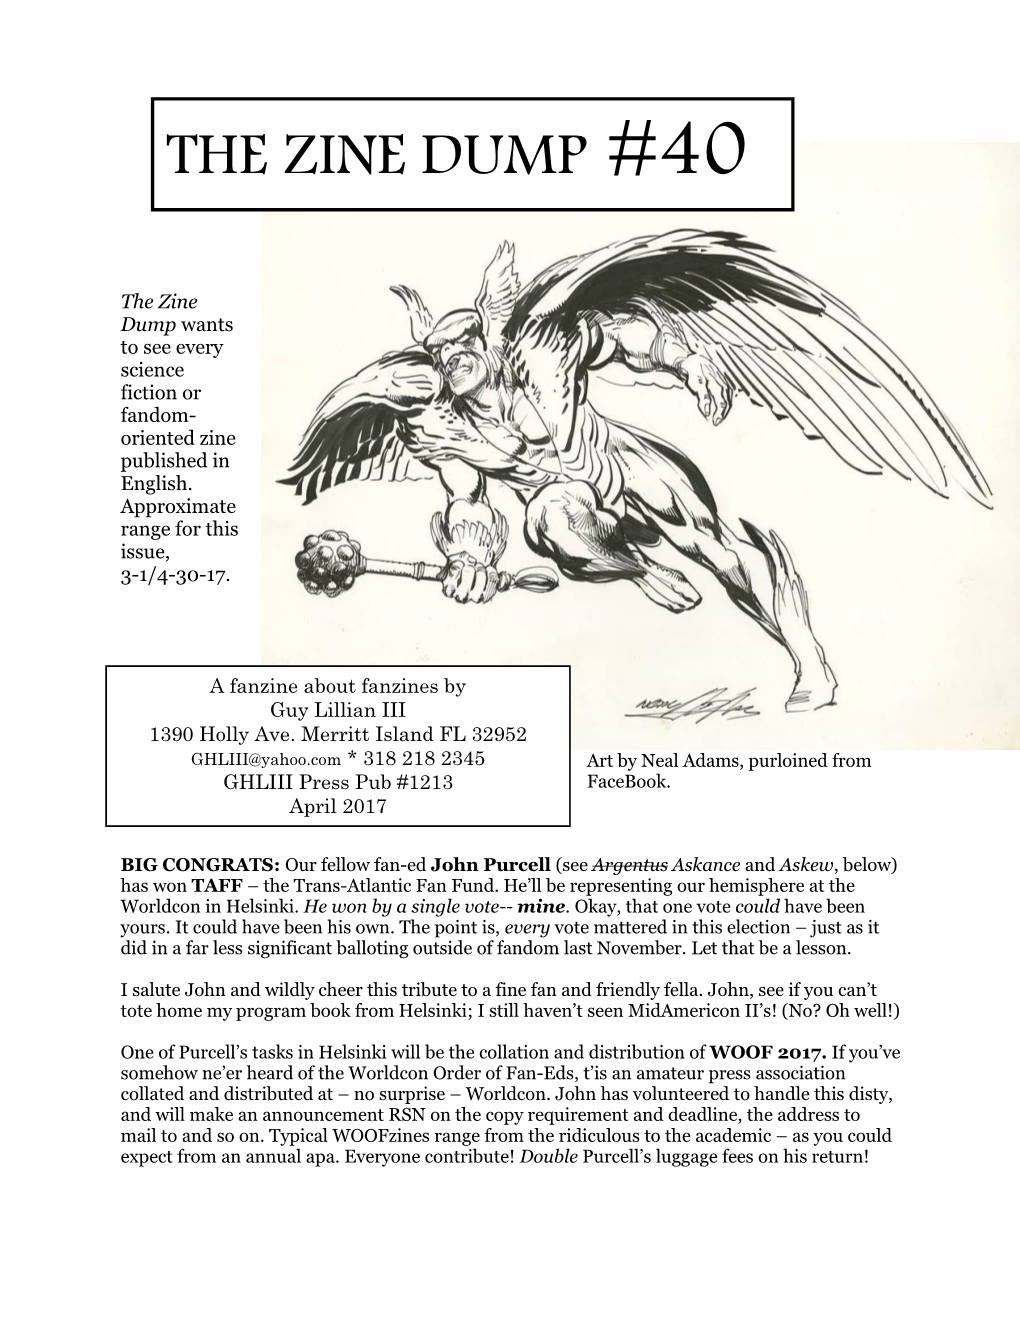 The Zine Dump #40